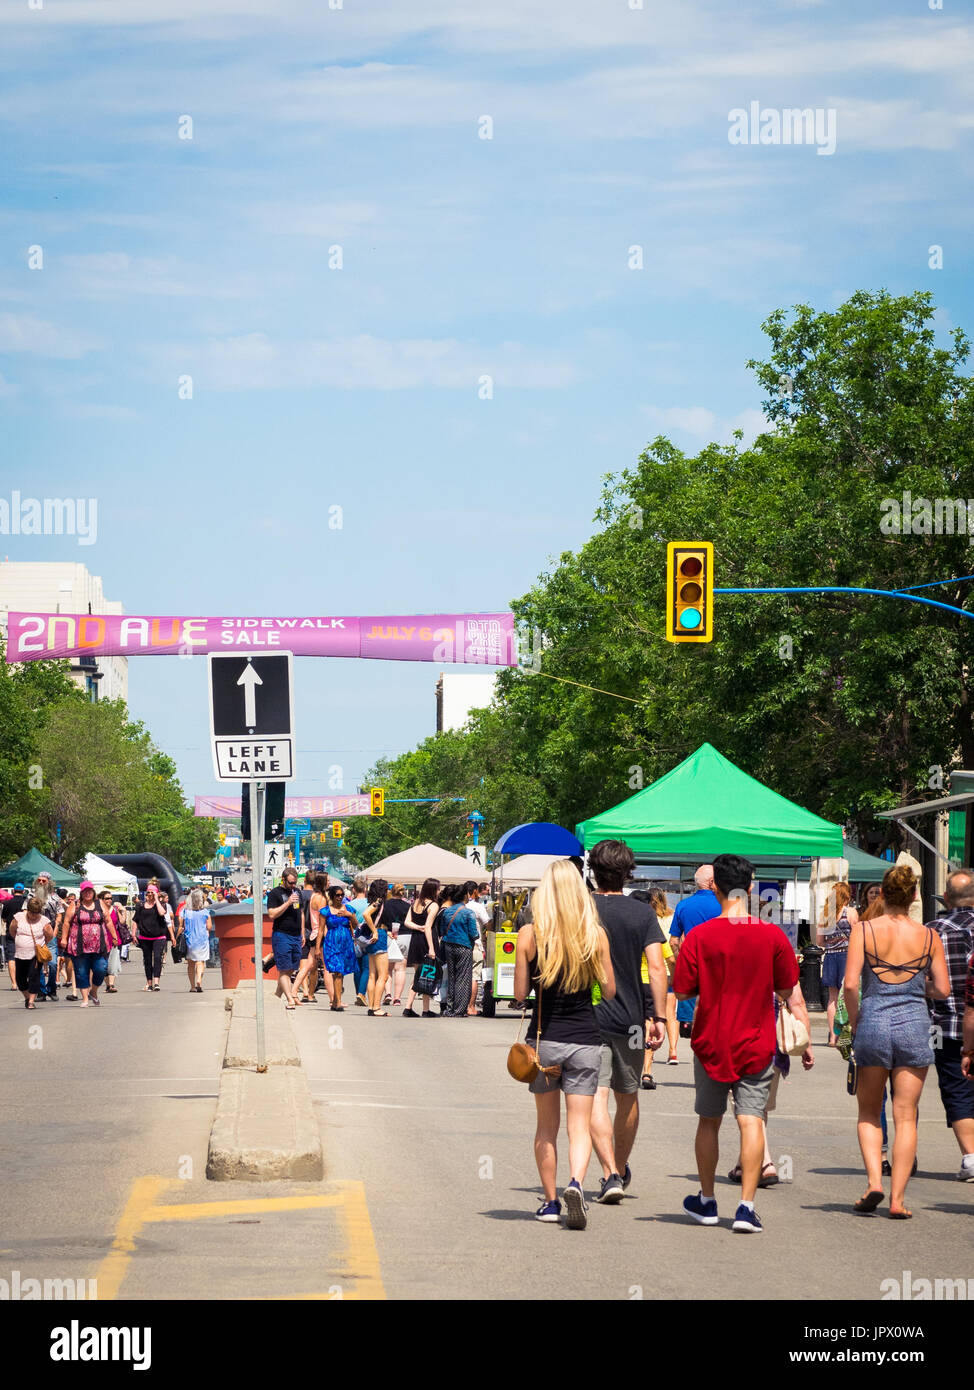 Il 2° Avenue marciapiede in vendita in Saskatoon, Saskatchewan, Canada. Una tradizione di Saskatoon, marciapiede vendita ha segnato il suo 41mo anniversario nel 2017. Foto Stock